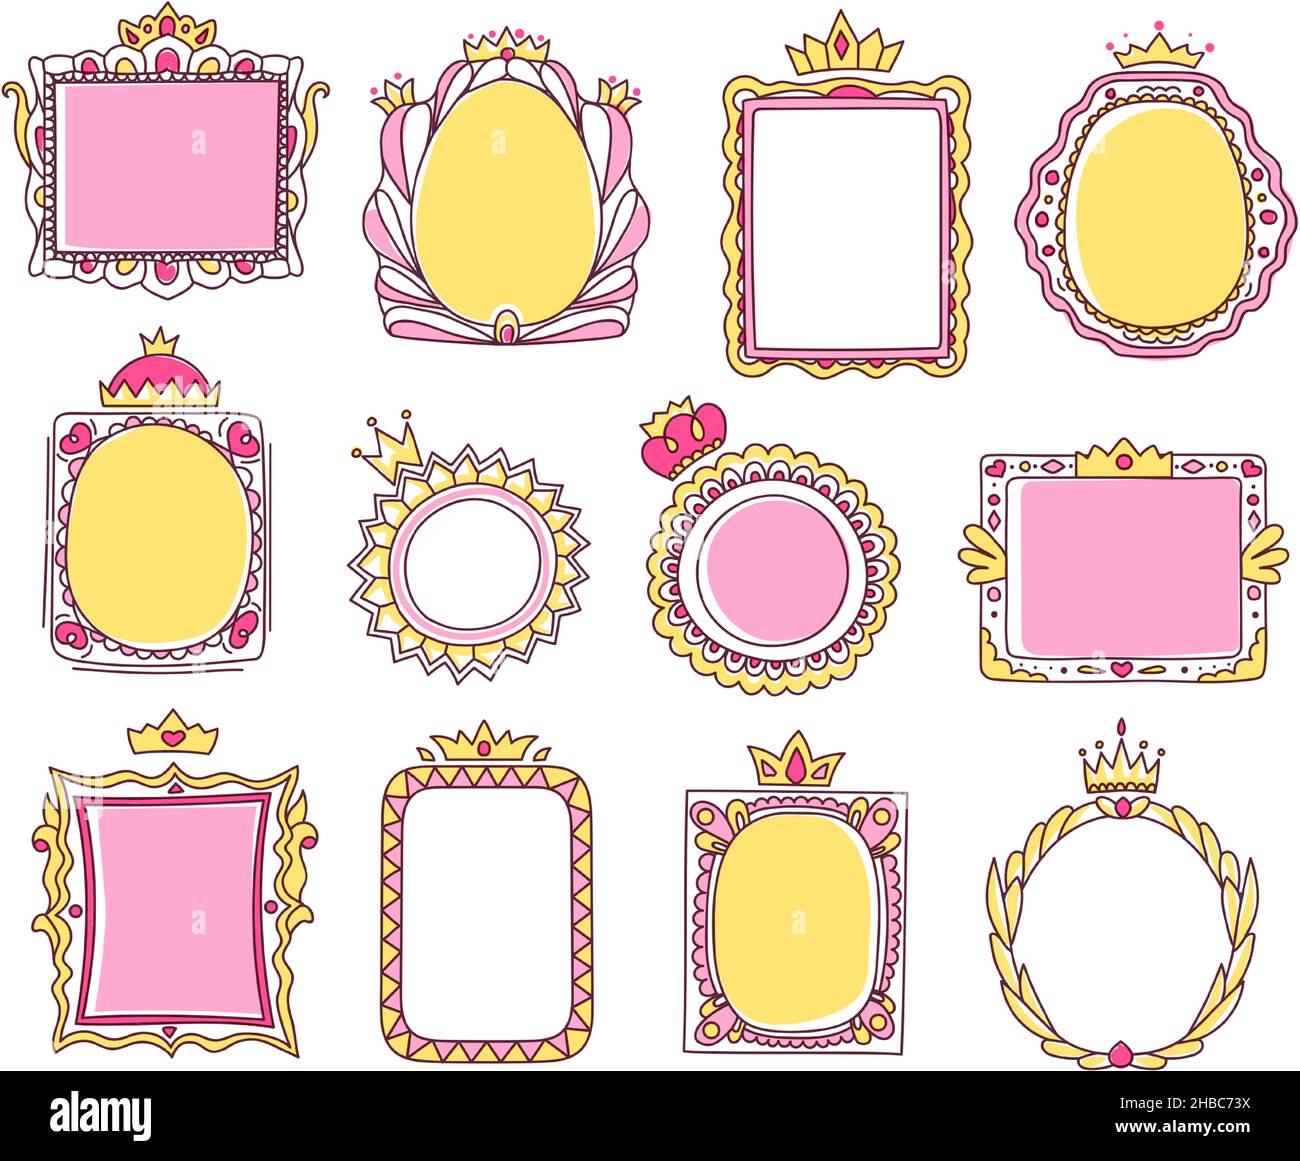 Niedliche handgezeichnete rosa Prinzessin Rahmen mit Kronen. Skizze Foto oder Spiegel Rahmen mit Tiara, girly Doodle Grenze für Baby Prinzessinnen Vektor-Set. Royal r Stock Vektor